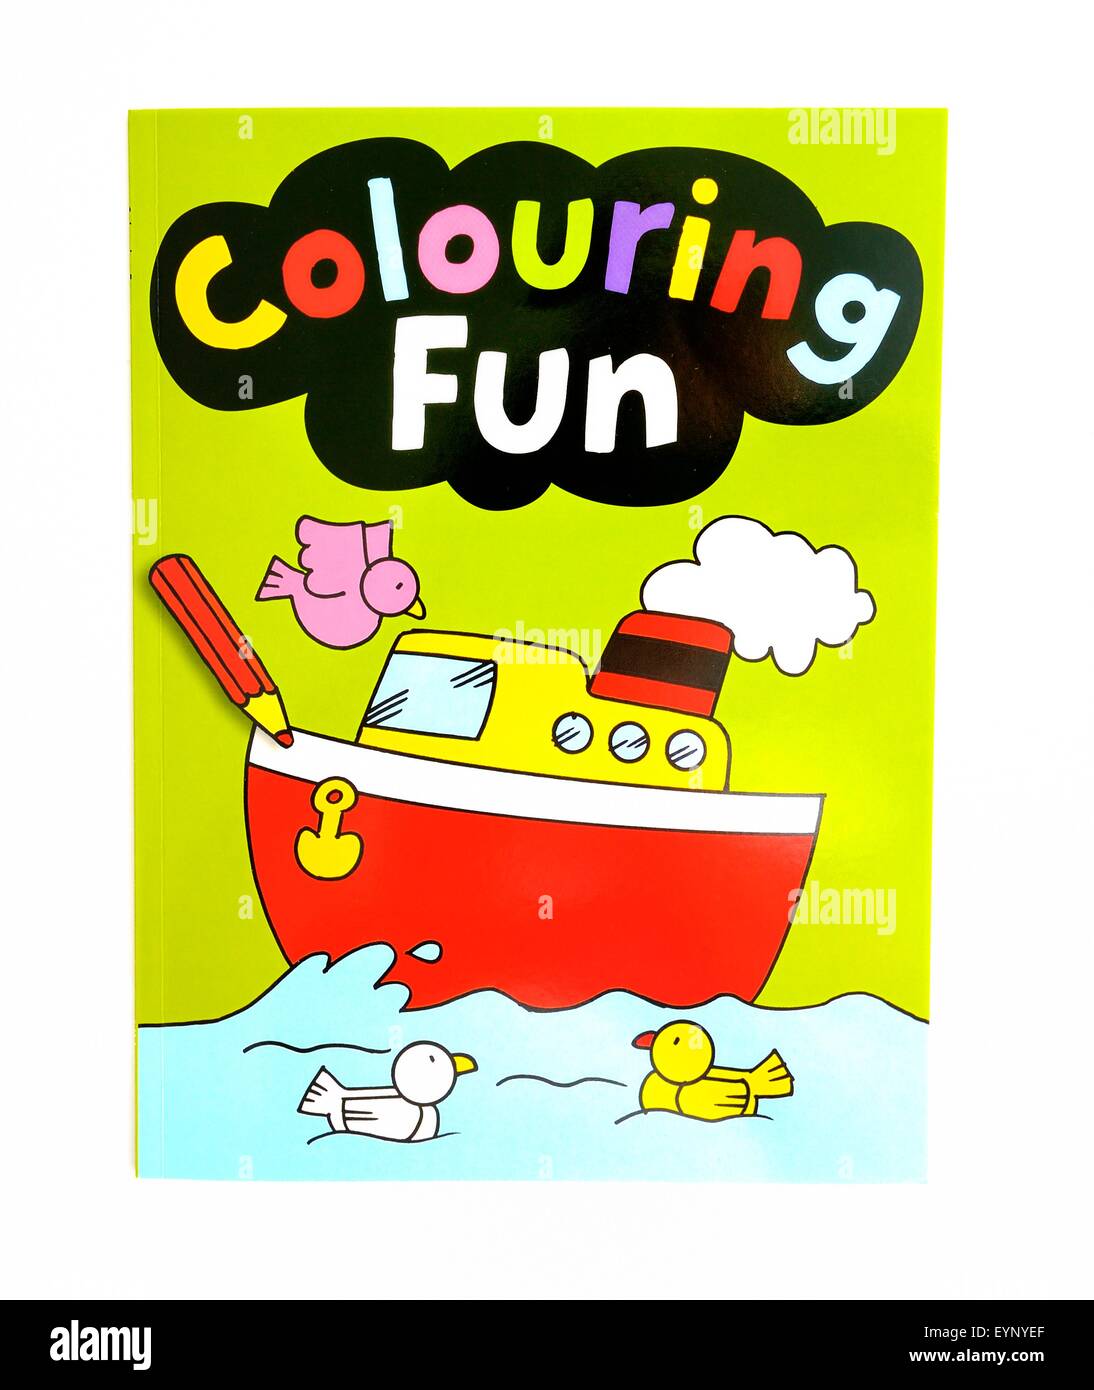 colouring fun book. Stock Photo